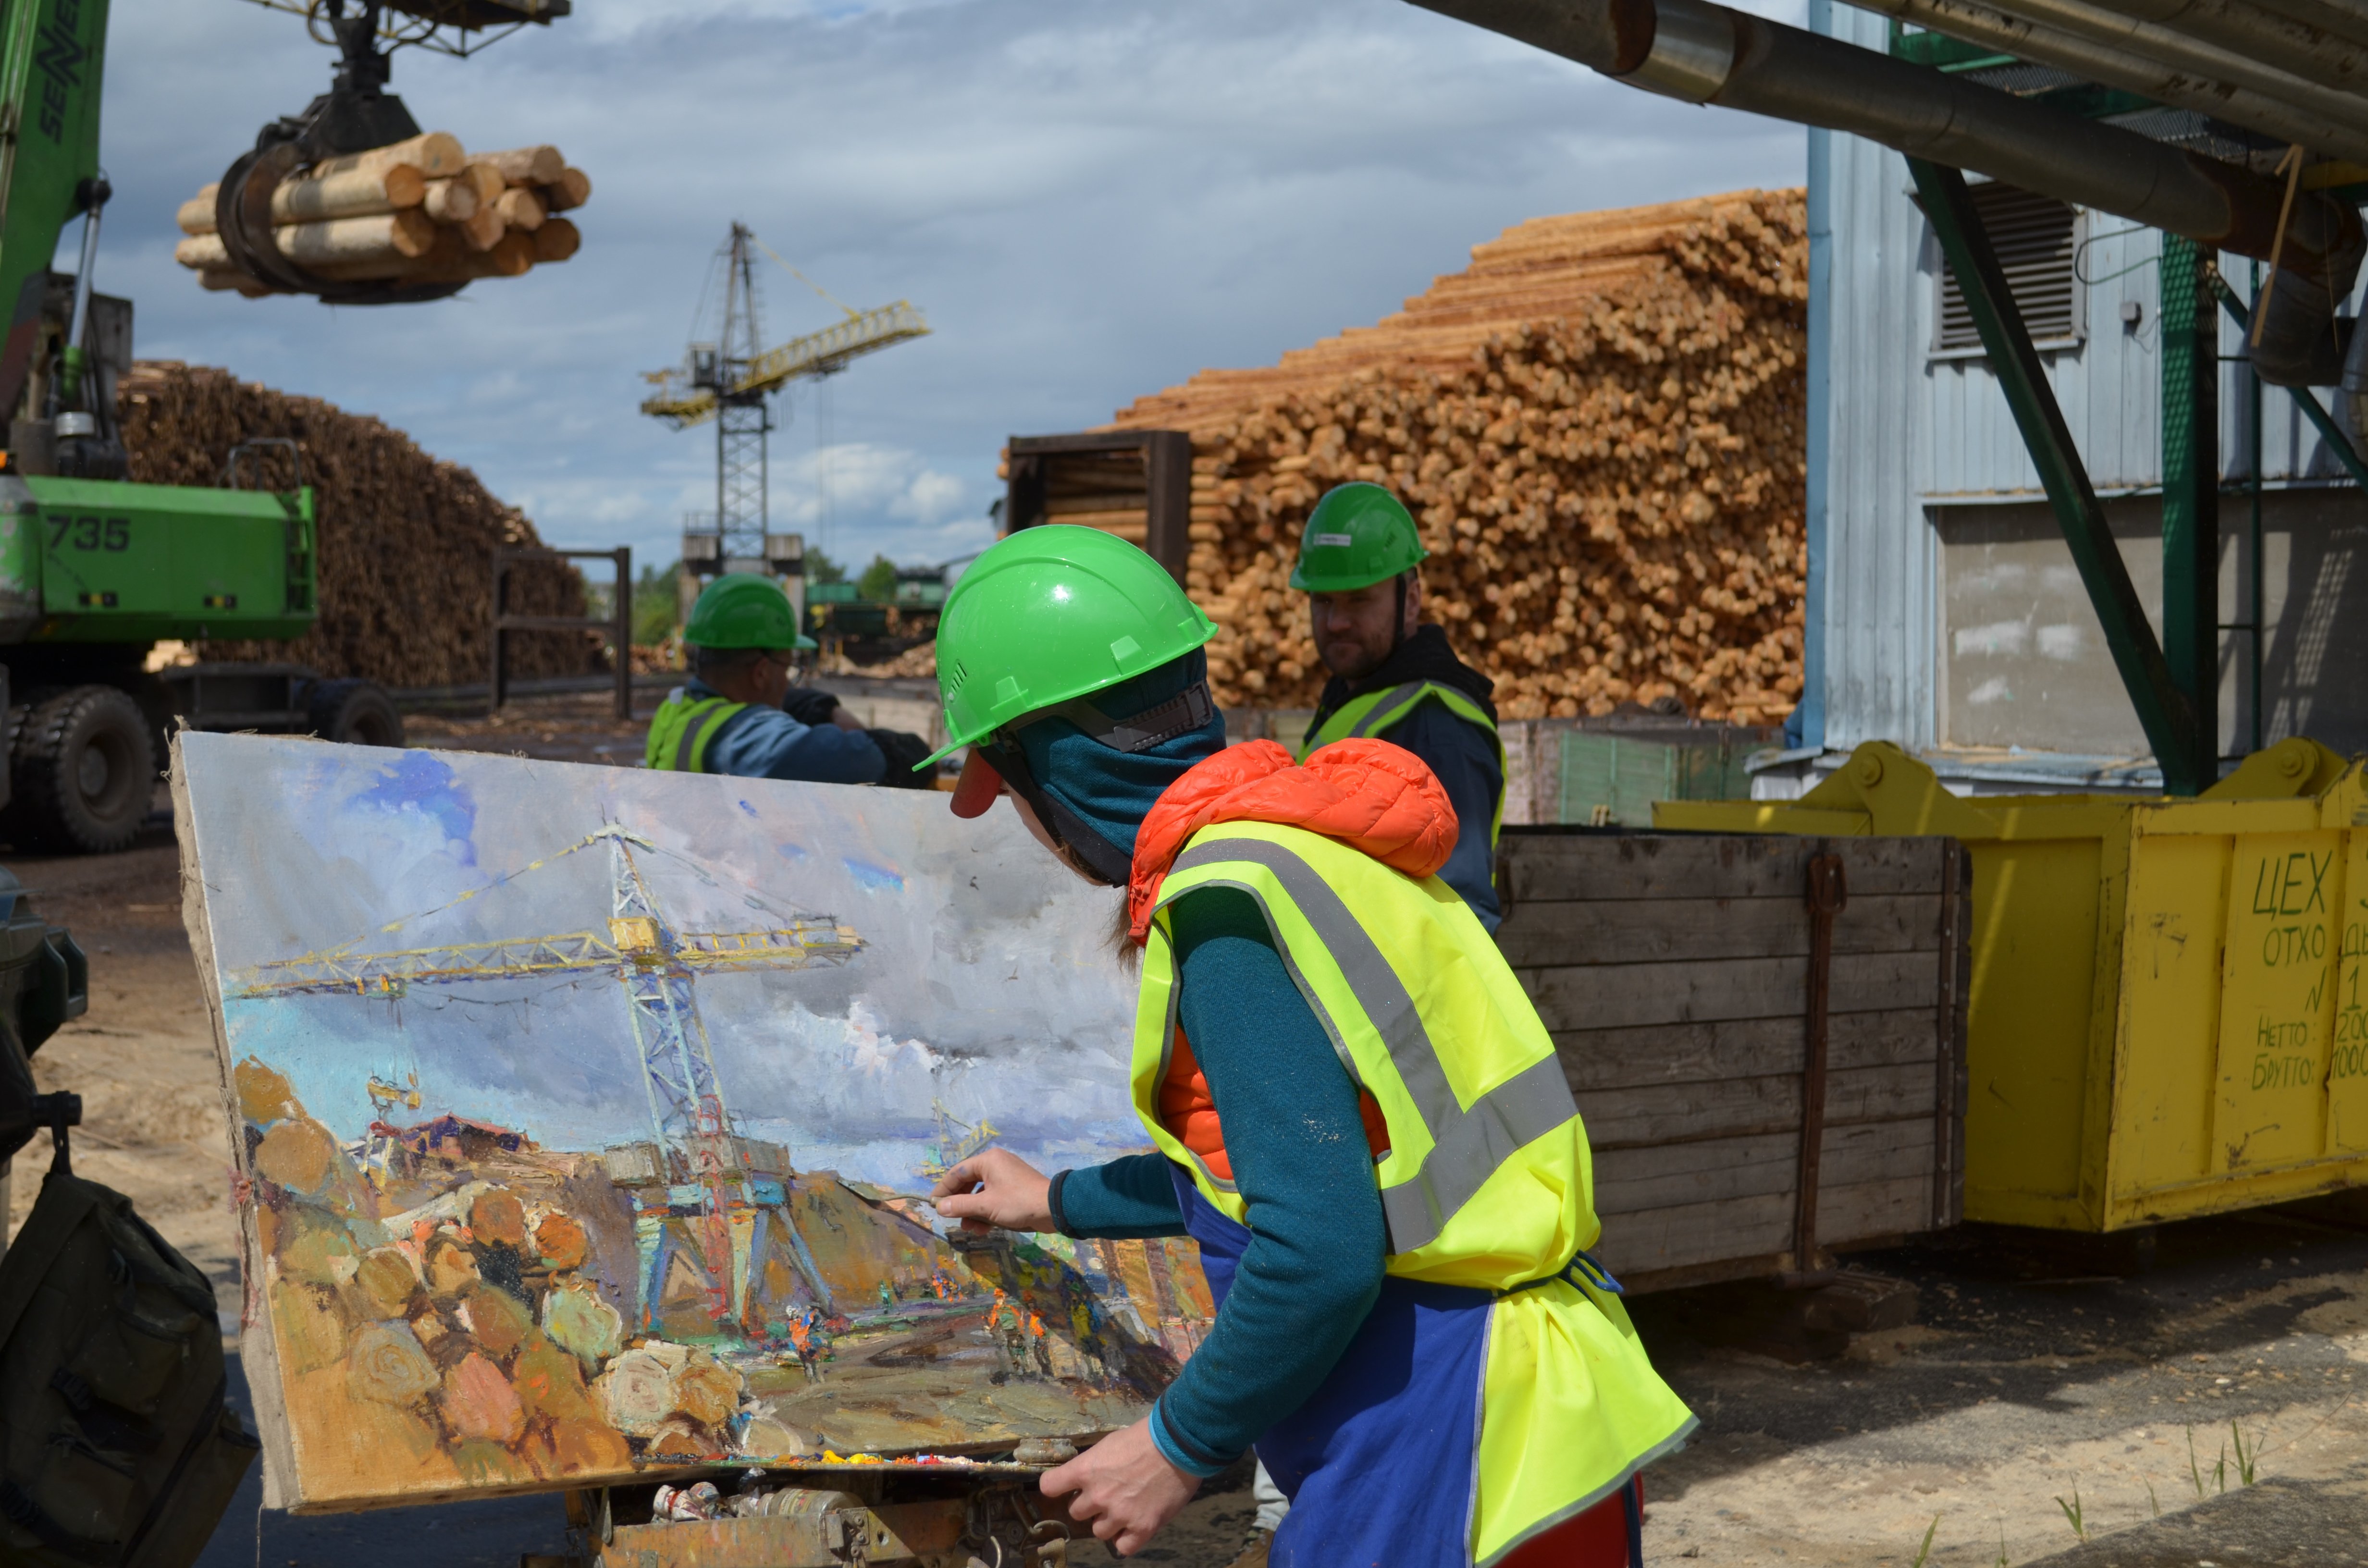 Вологодские художники провел пленэр на деревообрабатывающем комбинате Segezha Group